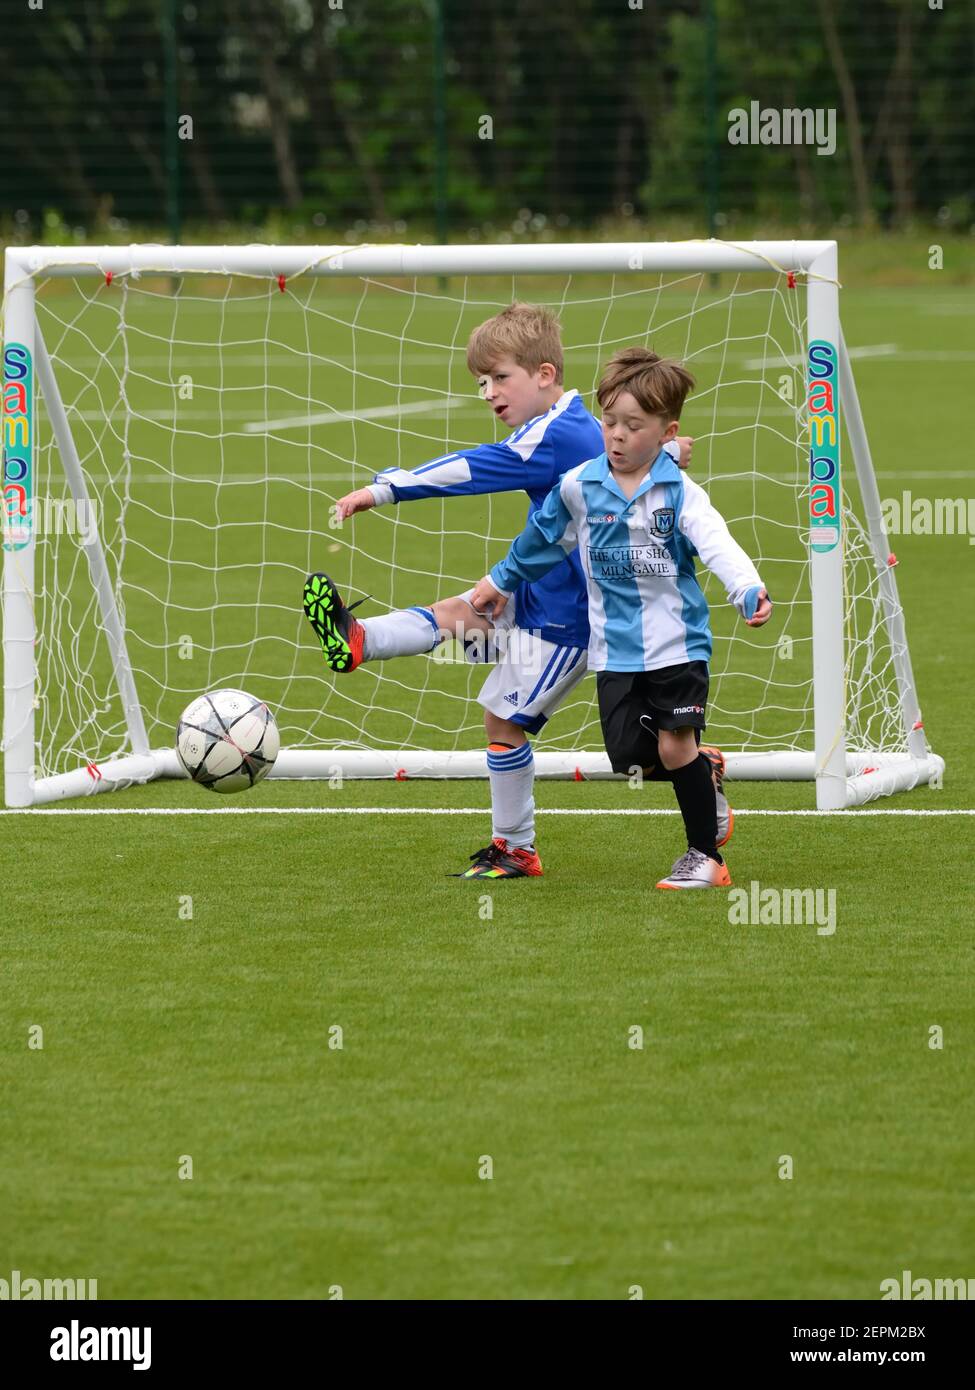 Dos niños pequeños juegan 7 un partido de fútbol organizado en una superficie artificial en Glasgow, Escocia, Reino Unido, Europa Foto de stock